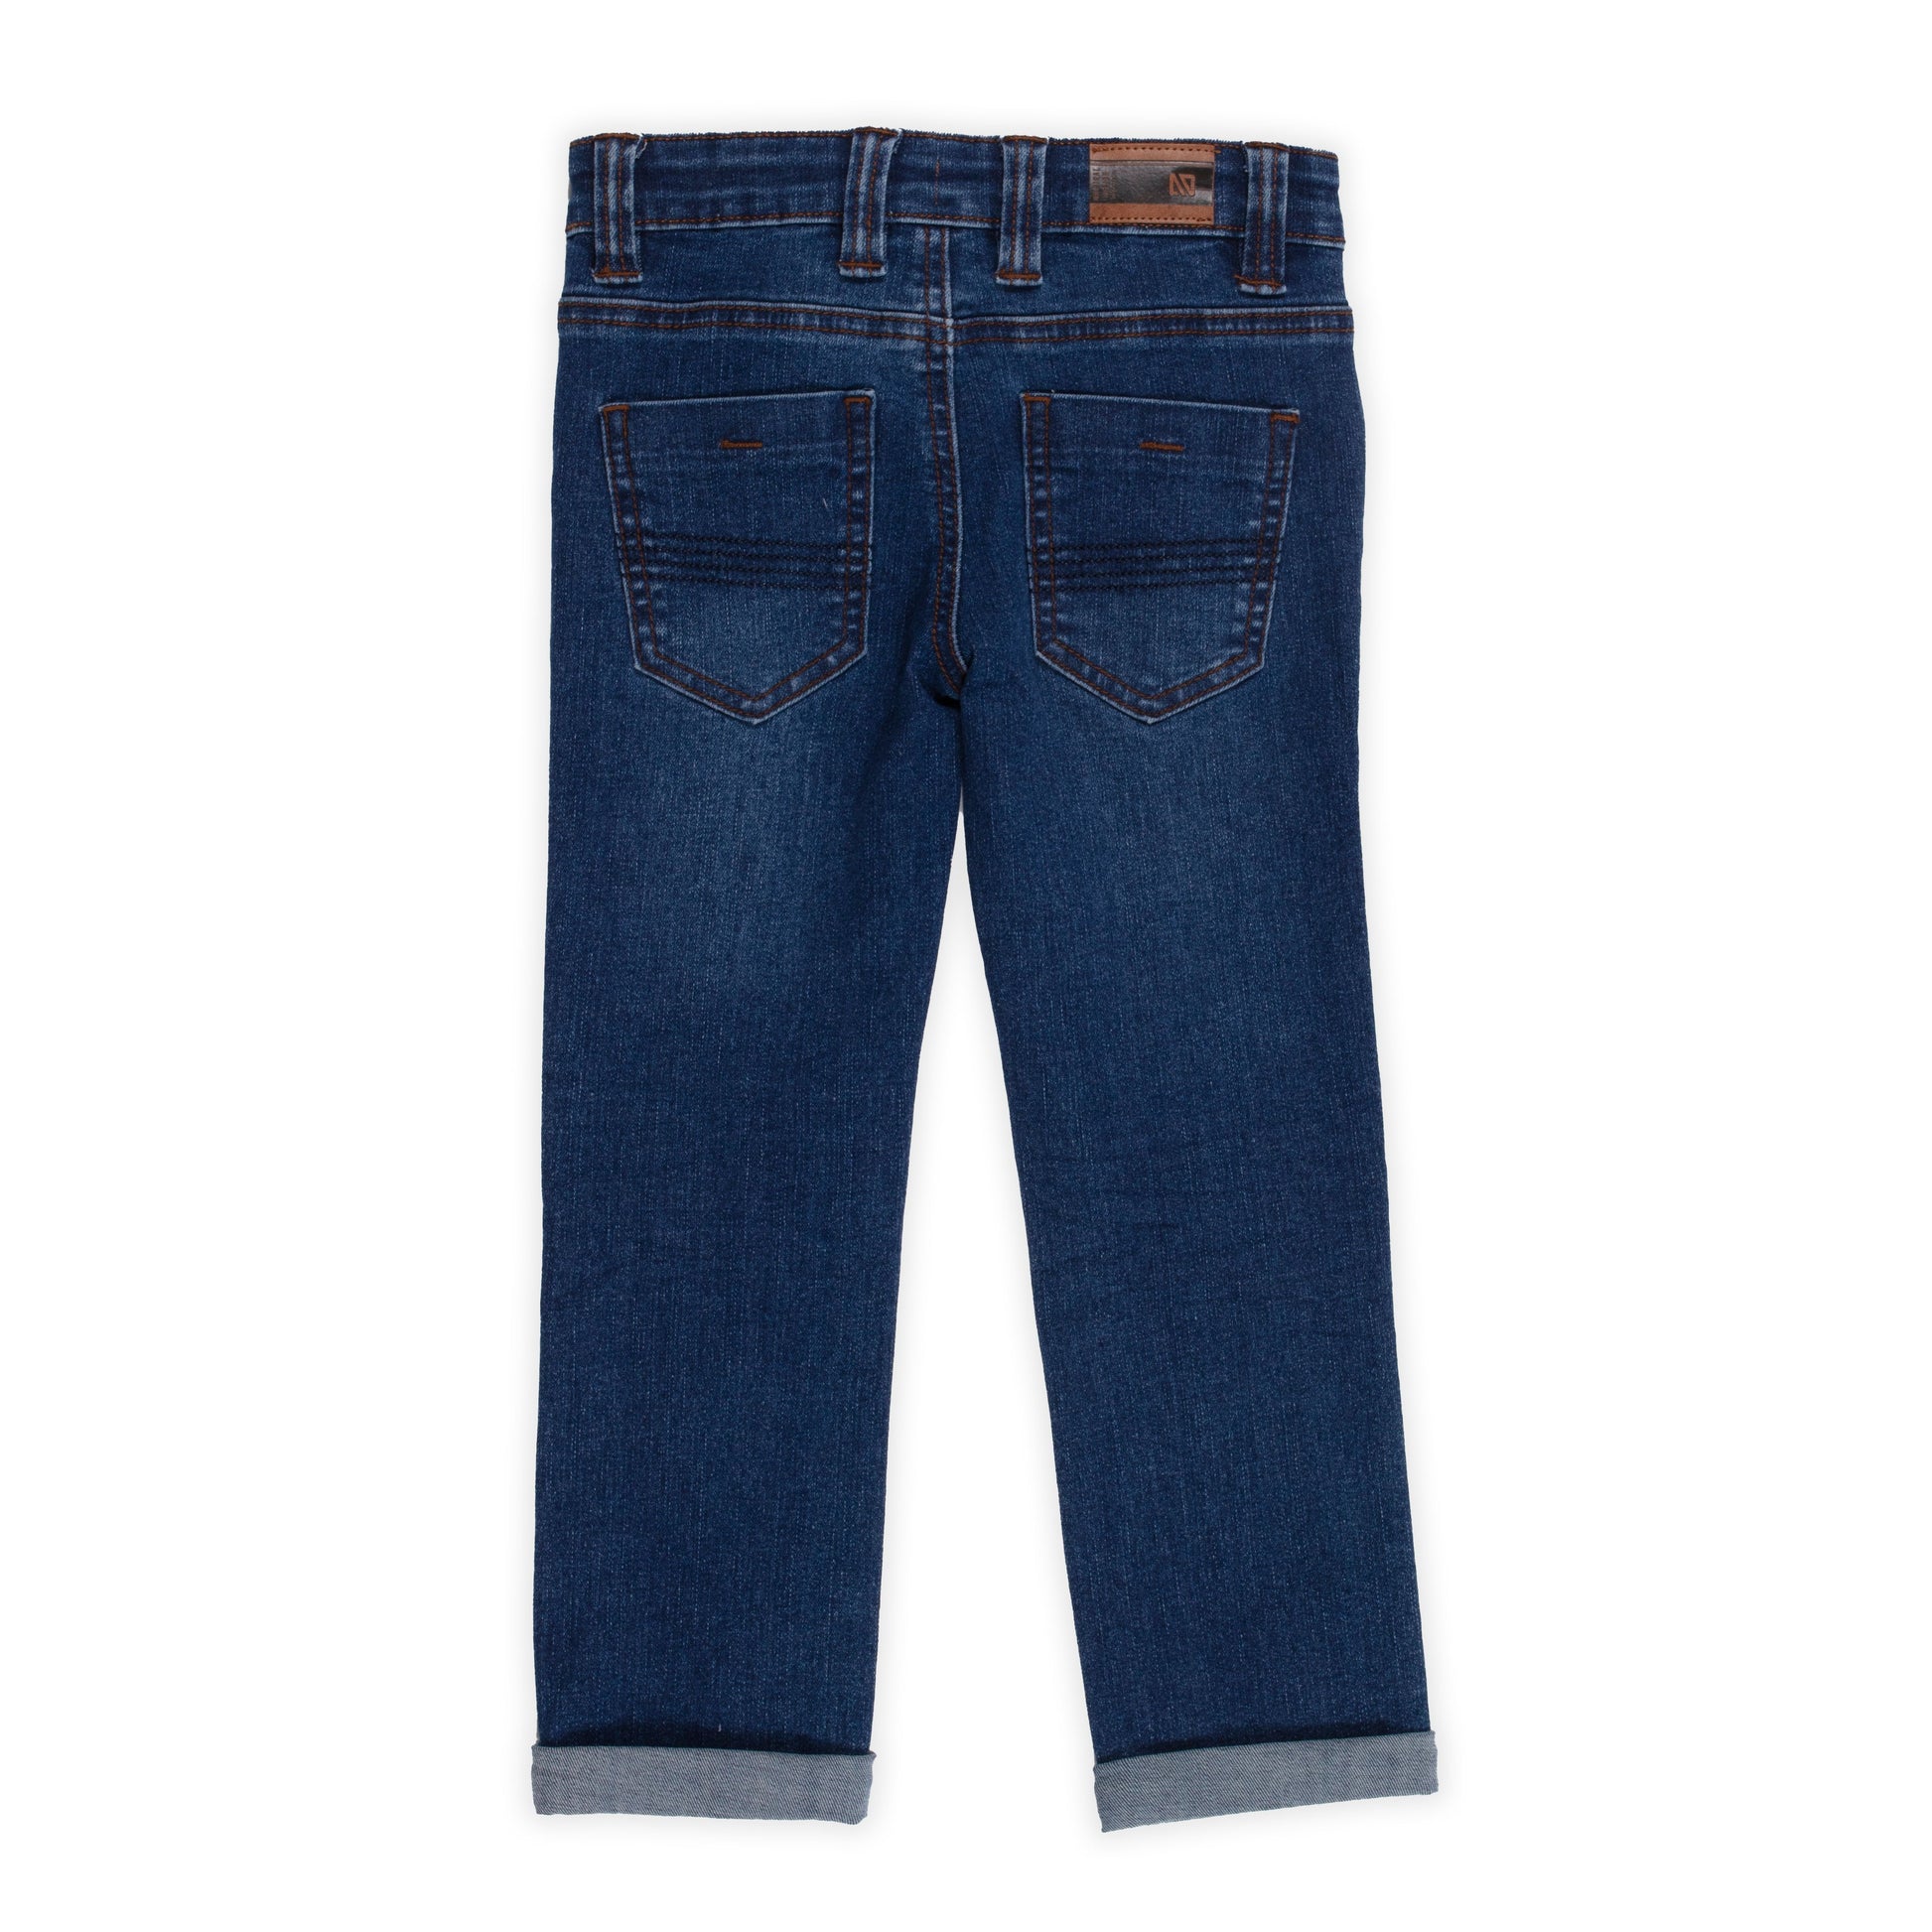 Boutique Petites Fleurs - Jeans bleu denim foncé EN VOL F2305-07 - nano collection